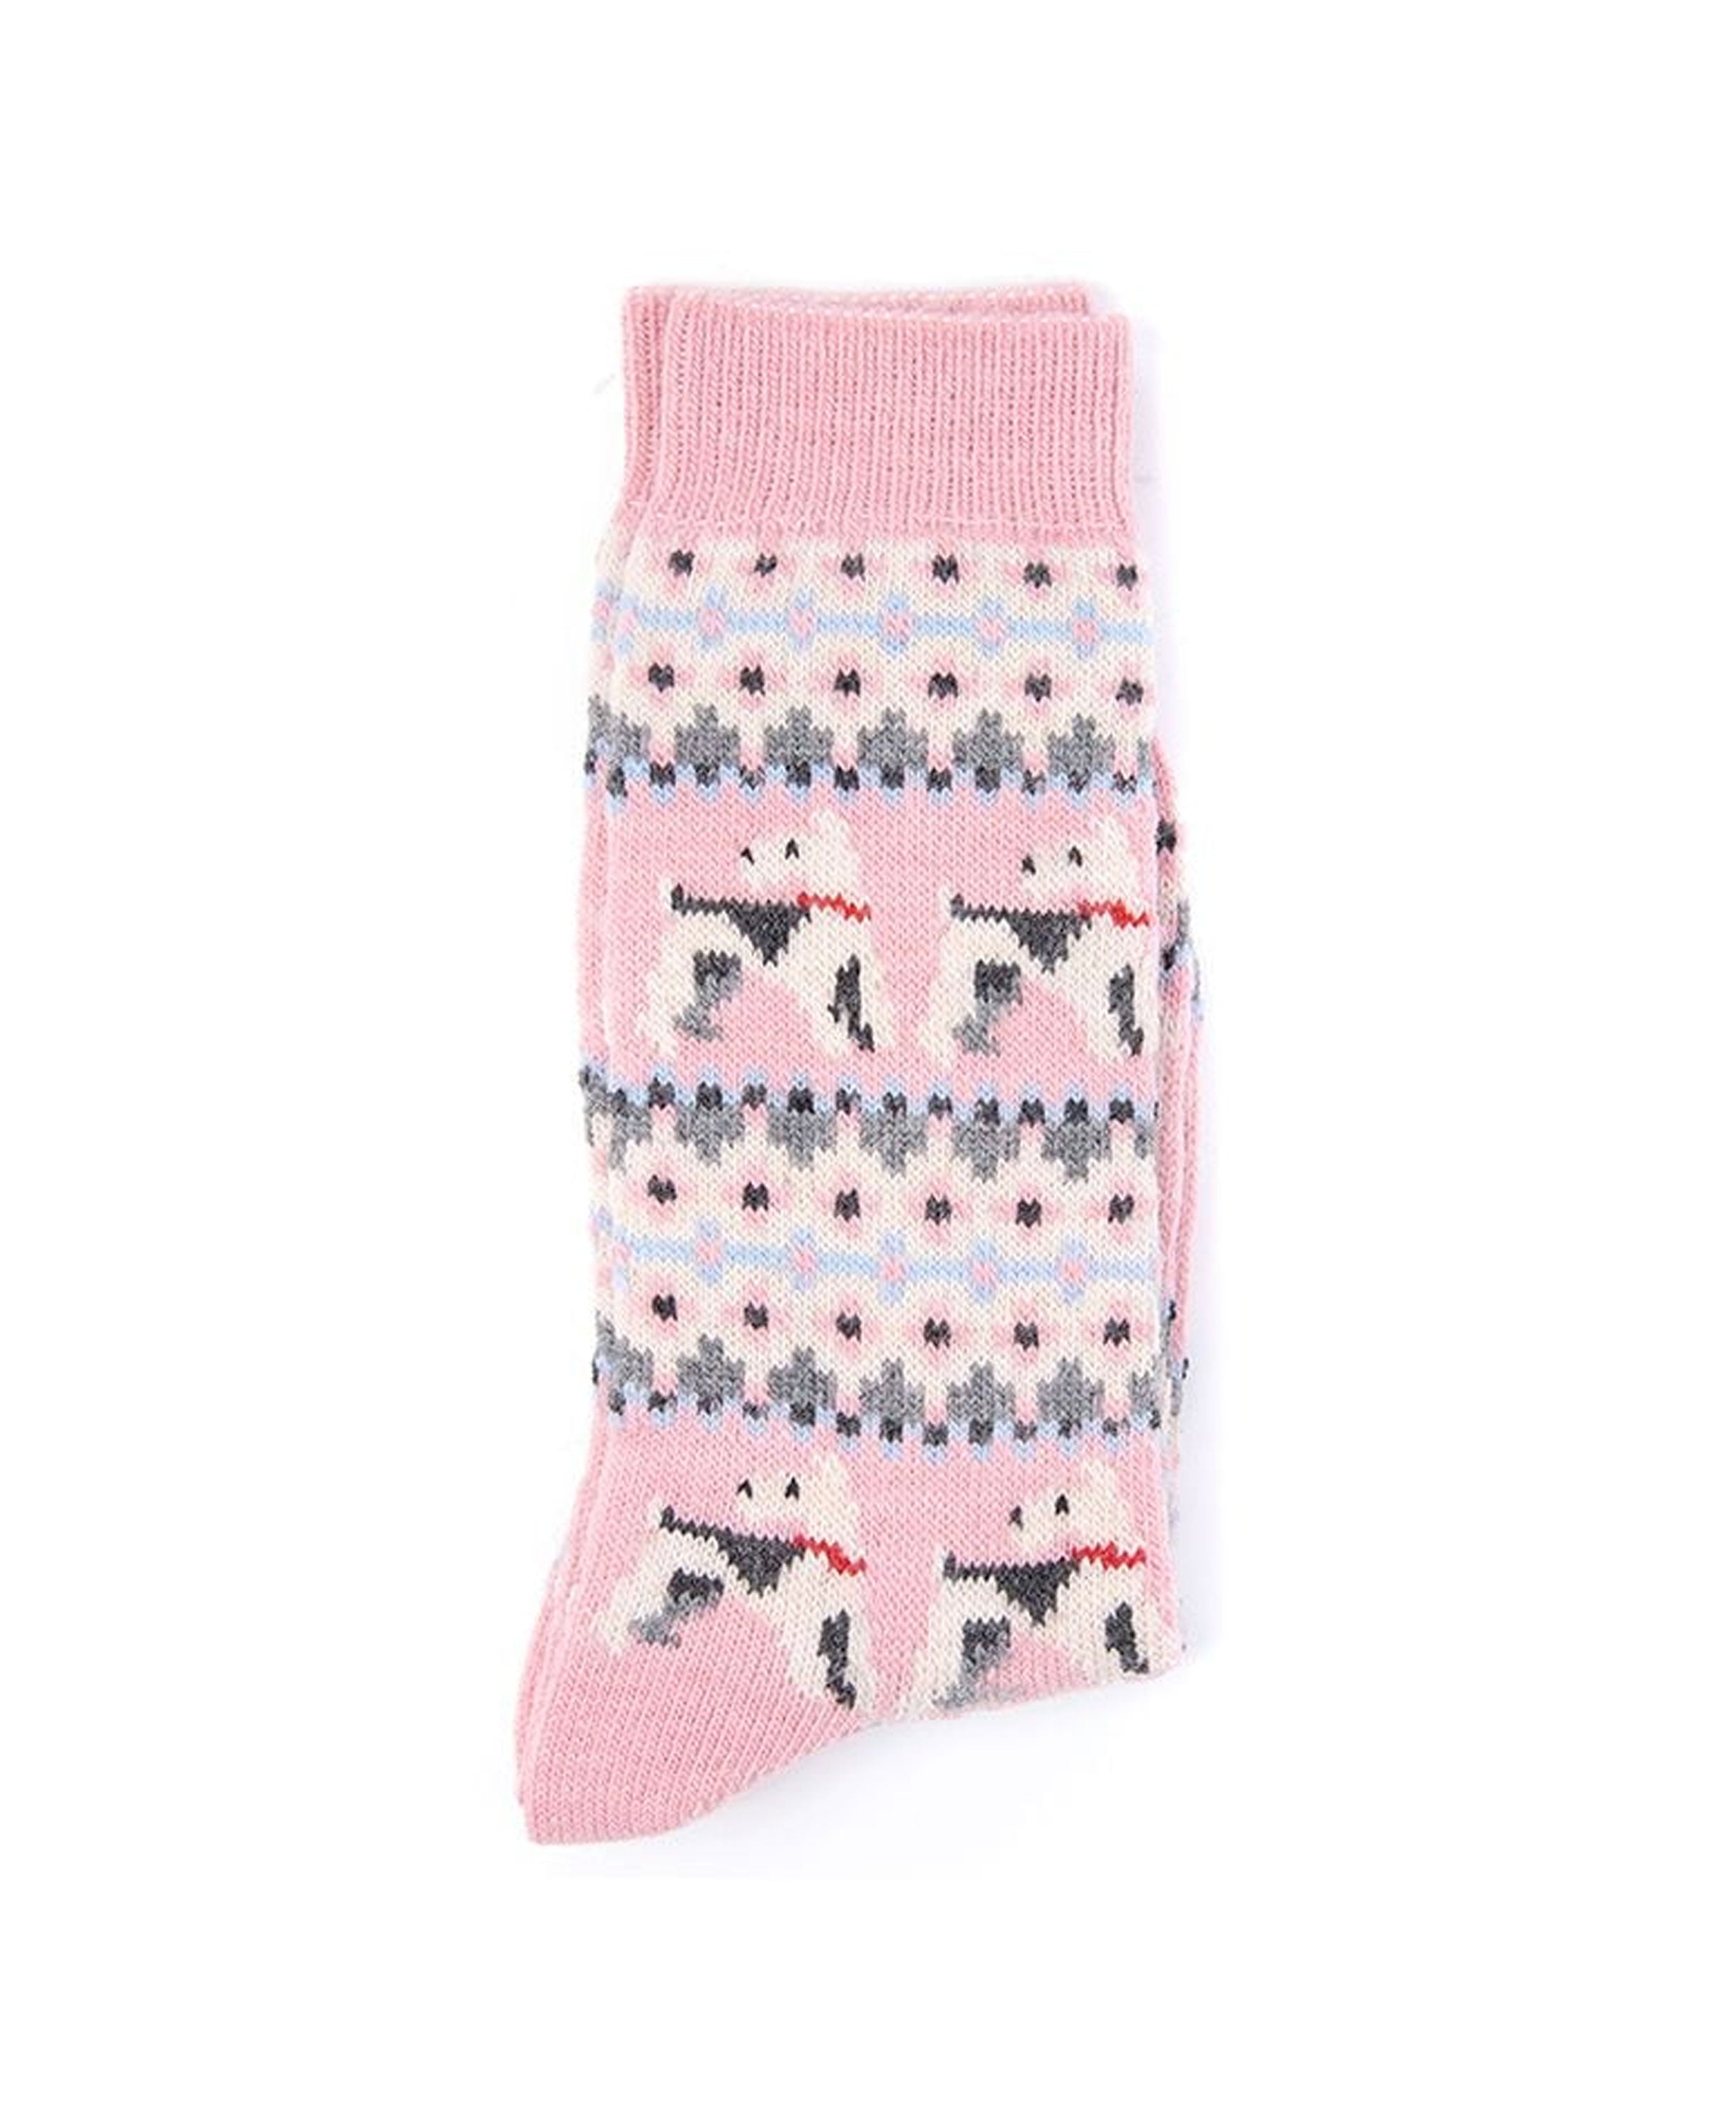 Terrier Fair Isle Socks - Pink